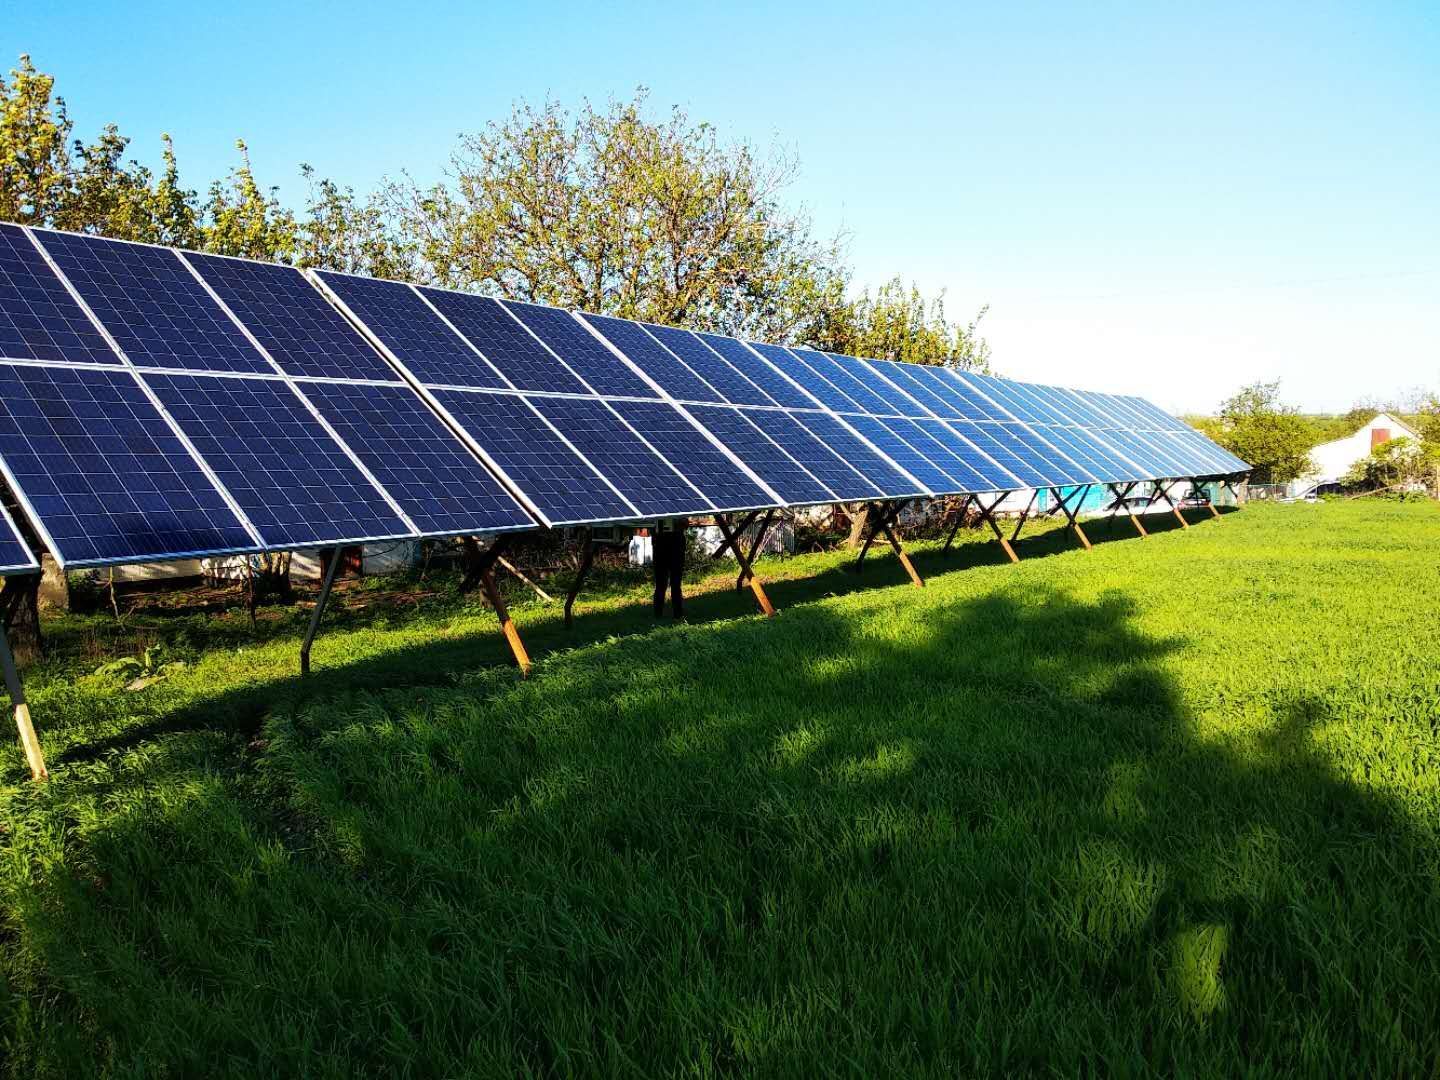 Пример солнечной подстанции на 35кВ, которая может подойти для использования пограничной заставой на прилегающей к ней территории. Стоимость оценивается приблизительно в 10 тысяч евро